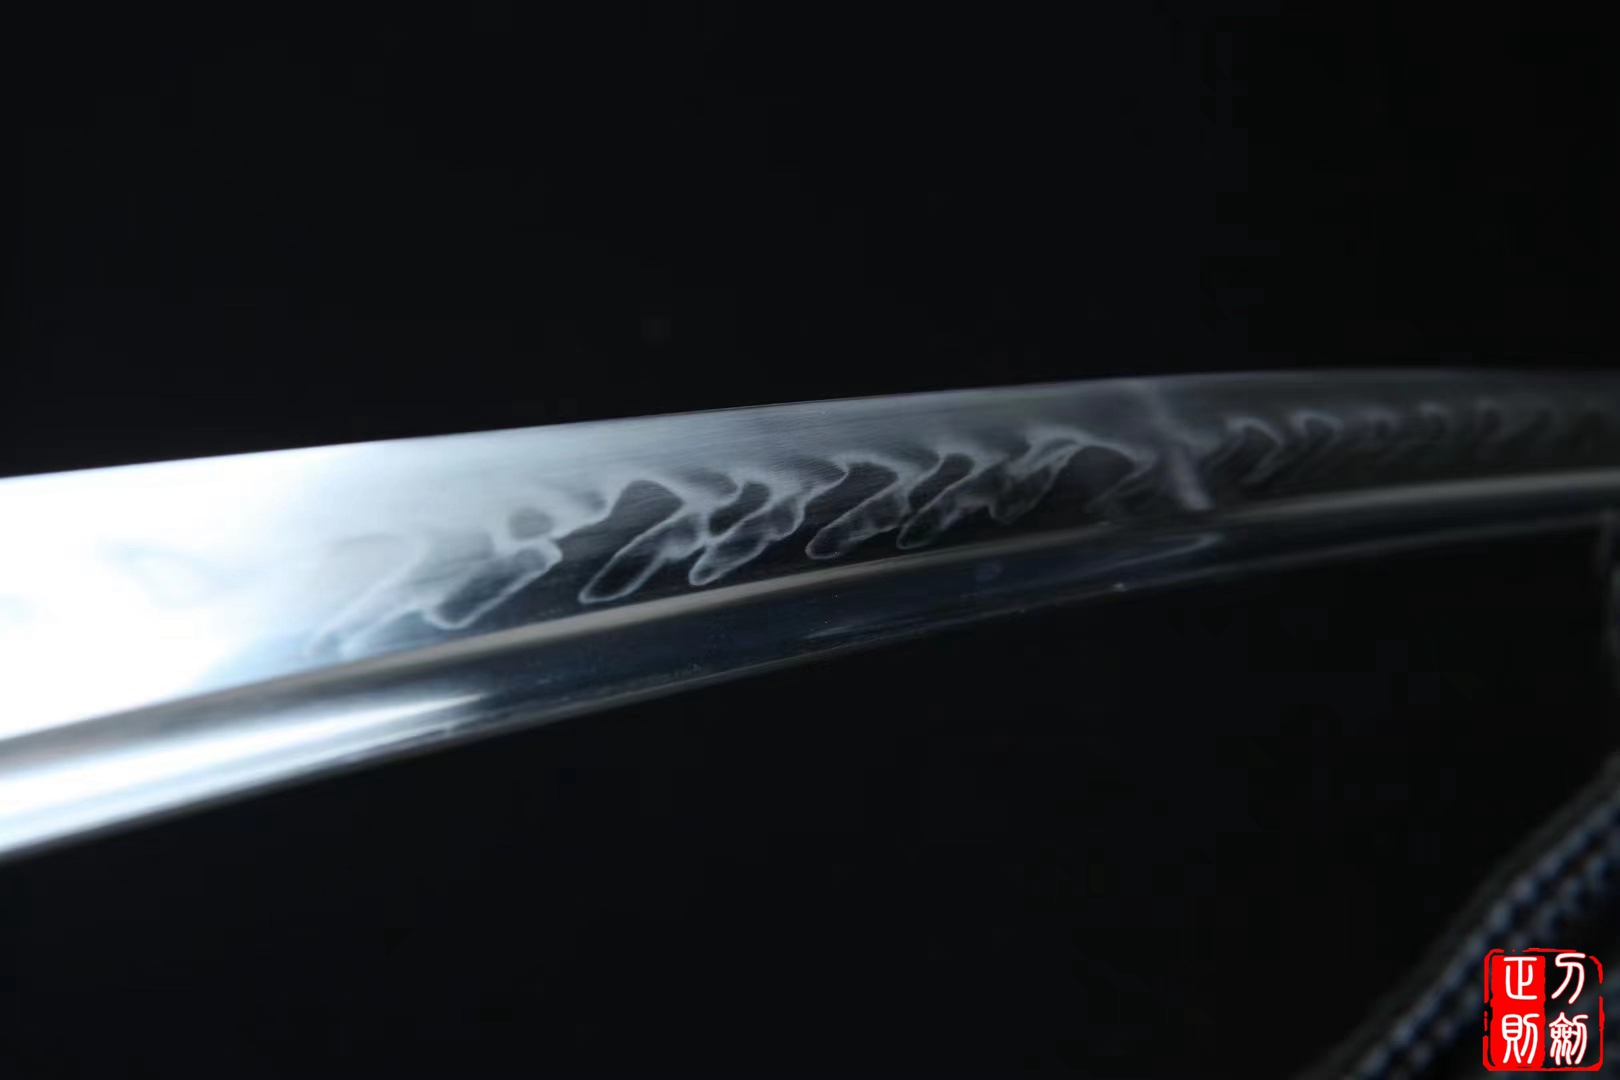  龙魂烧刃武士刀|高碳钢t10|武士刀正则,日本武士刀,中国日本刀,东洋刀,武士刀图片